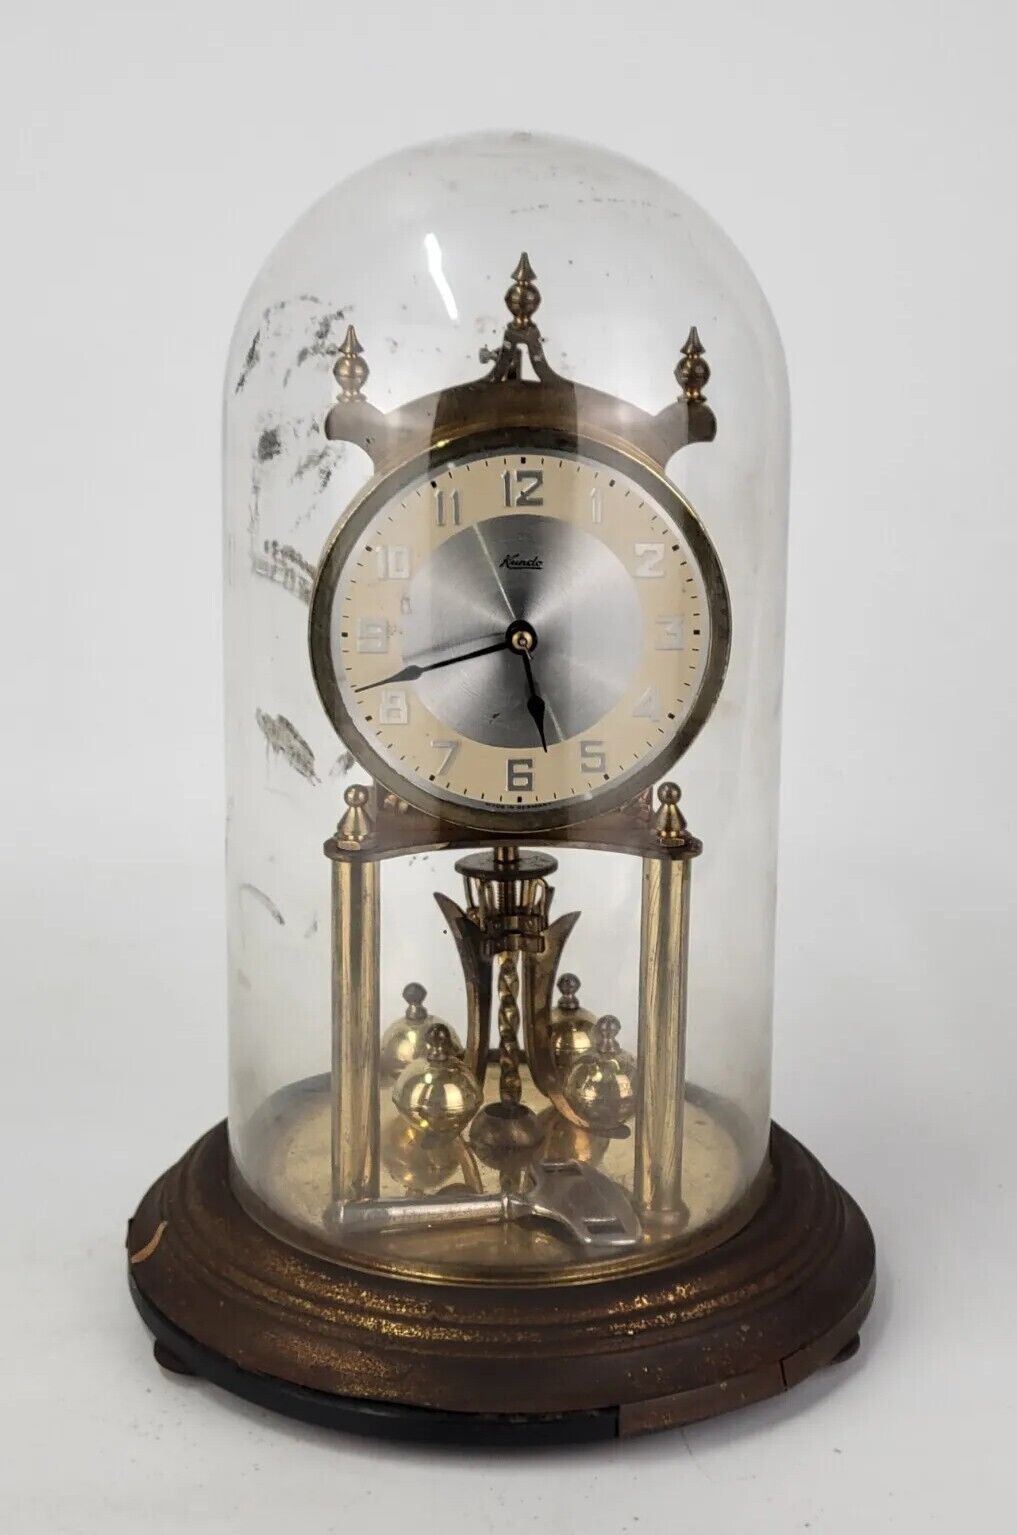 Kundo 400 Day Anniversary Clock with Key KIENINGER AND OBERGFELL KEY